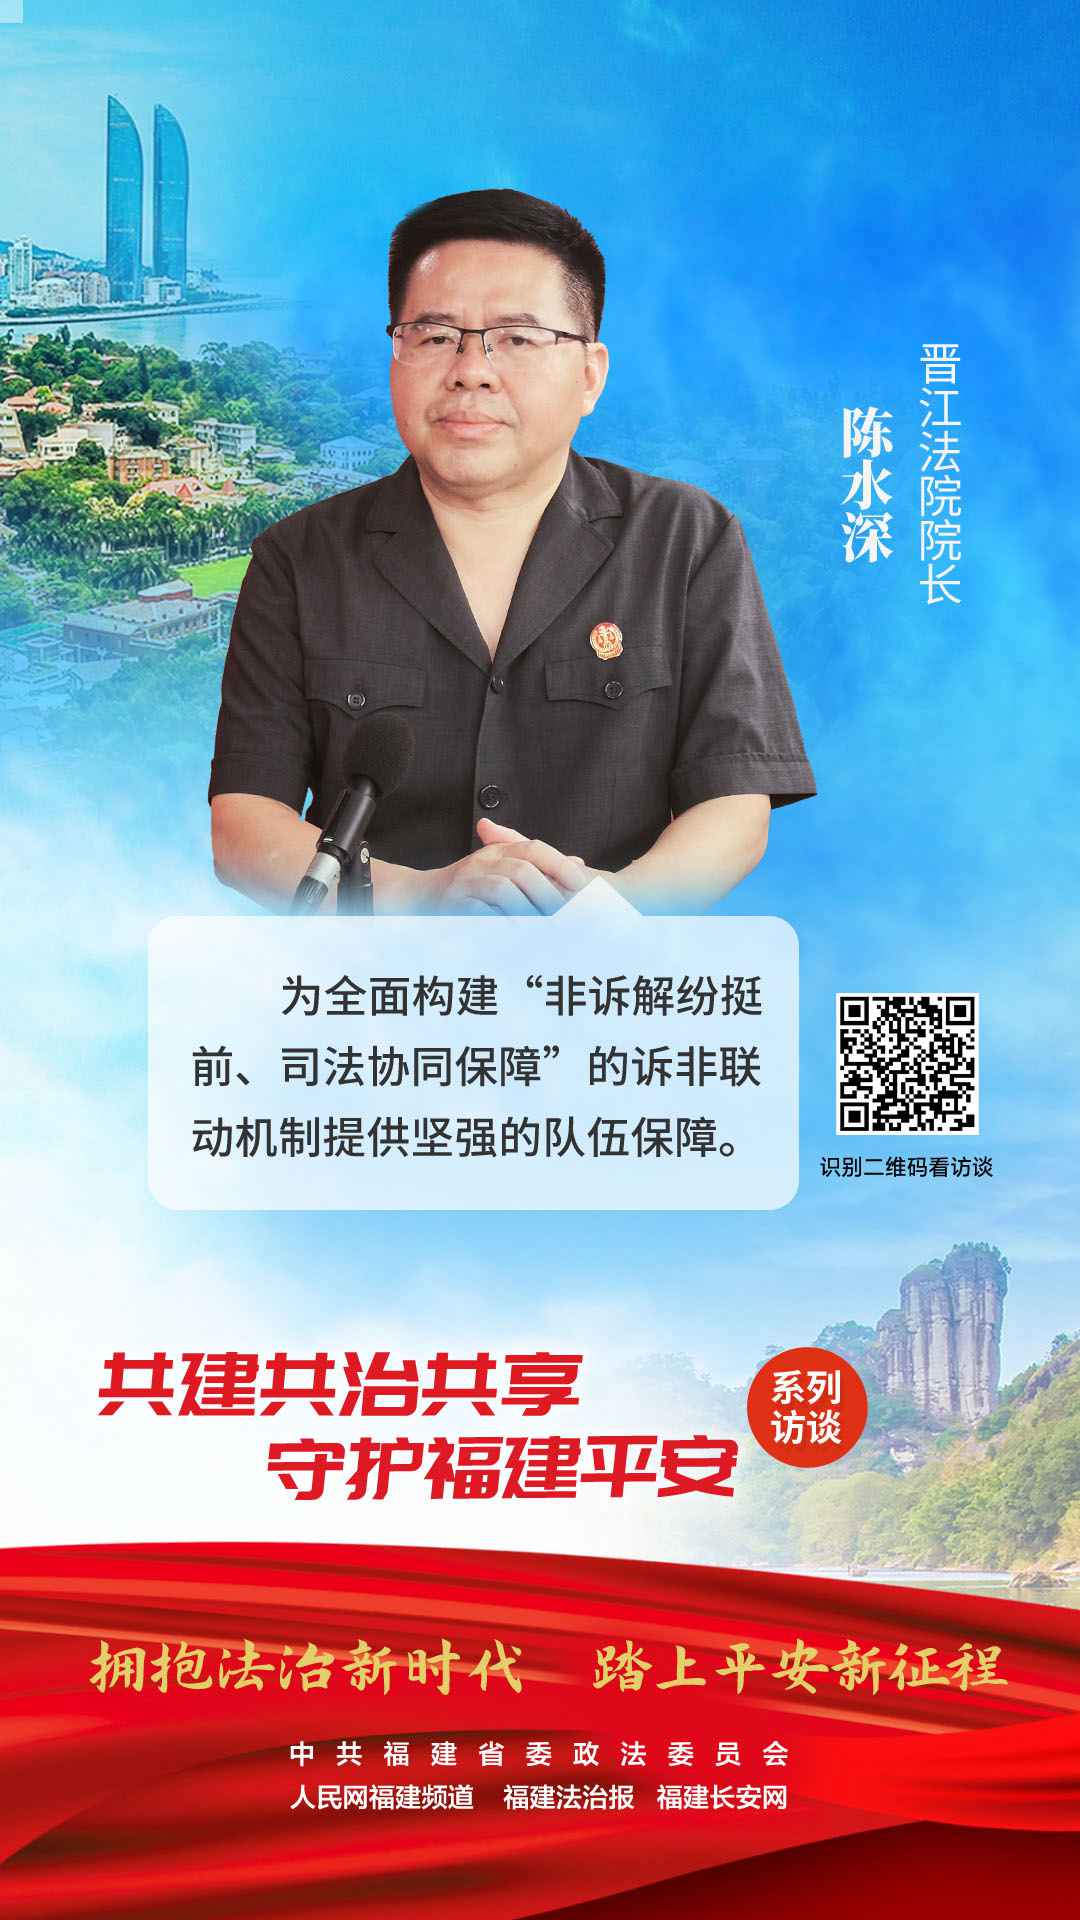 晉江市人民法院院長 陳水深